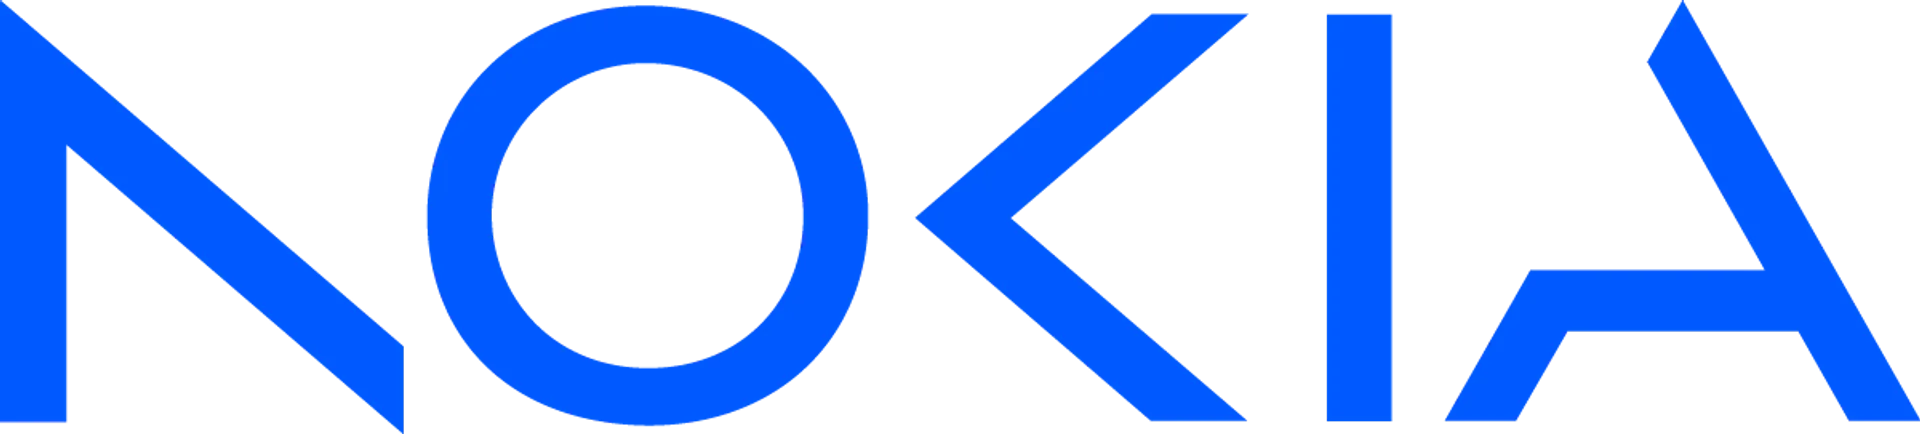 NOKIA logo de catálogo